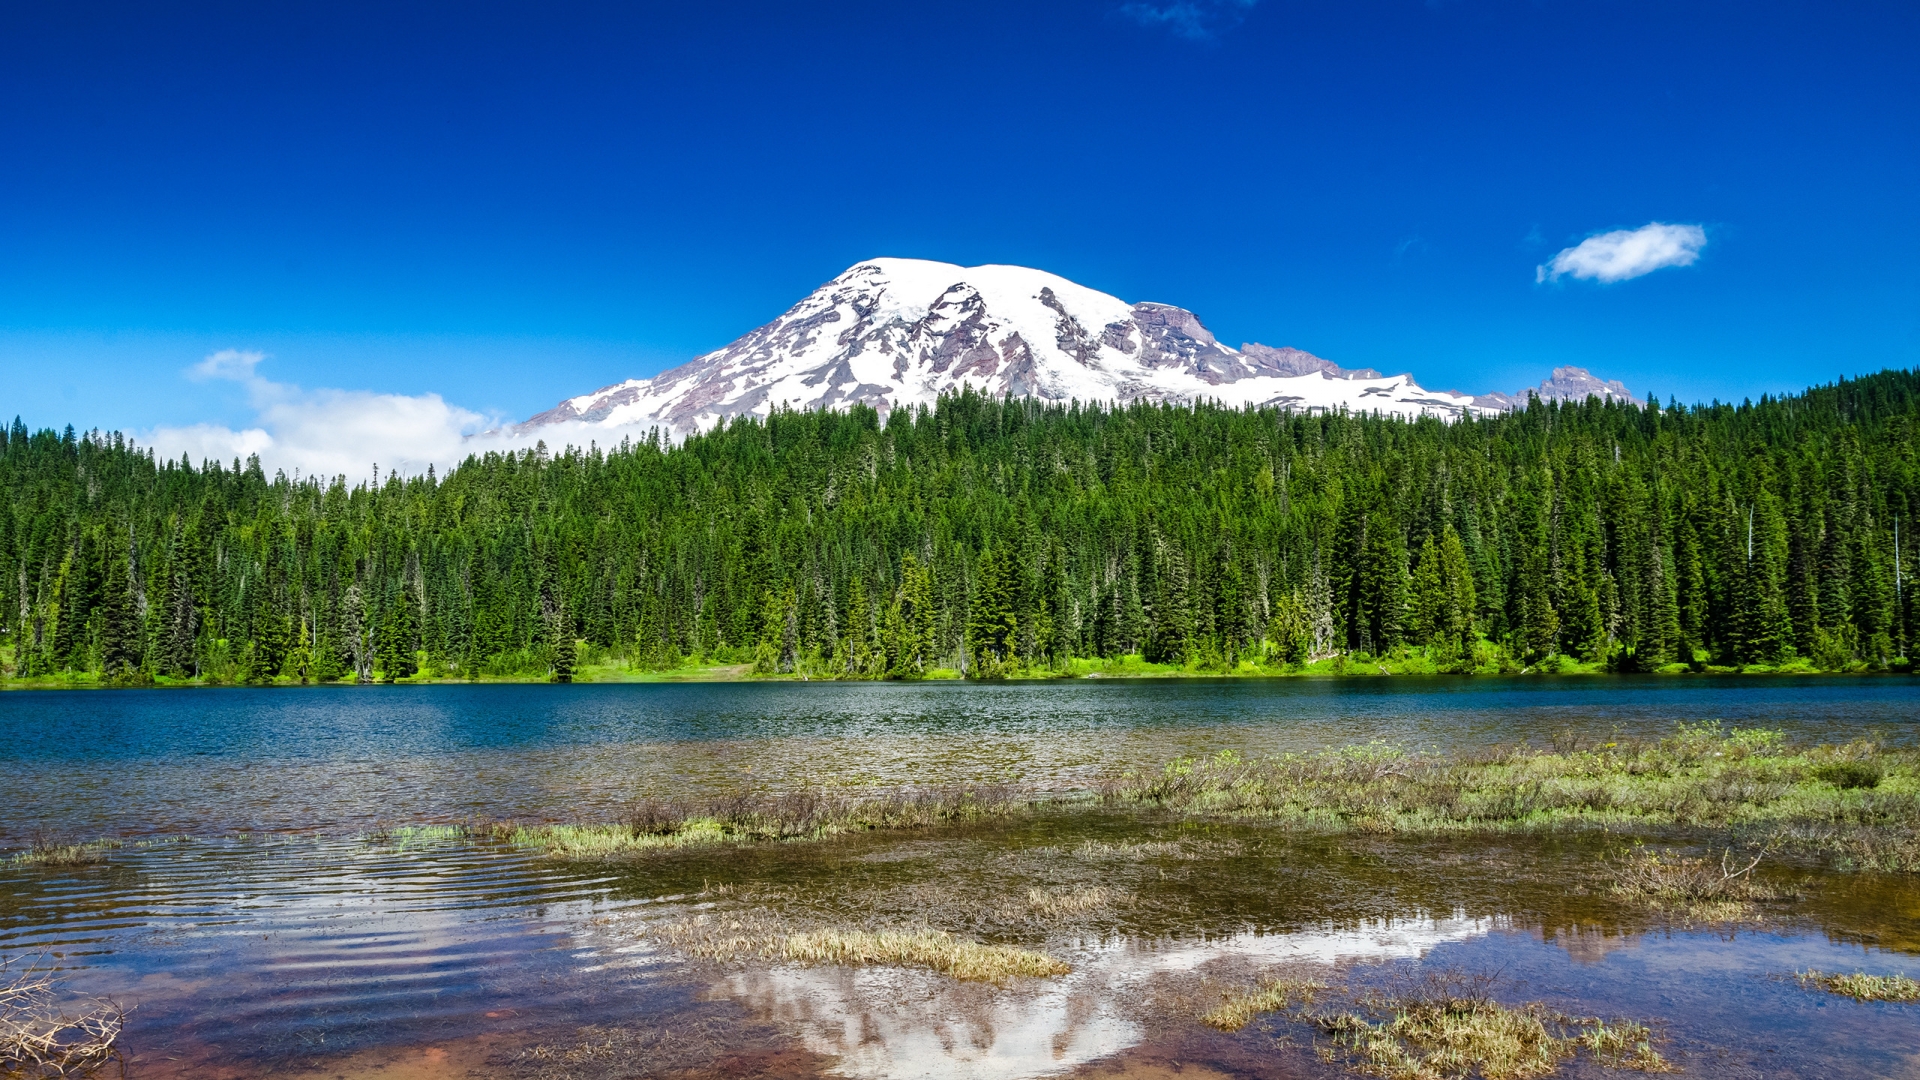 Mount Rainier National Park for 1920 x 1080 HDTV 1080p resolution